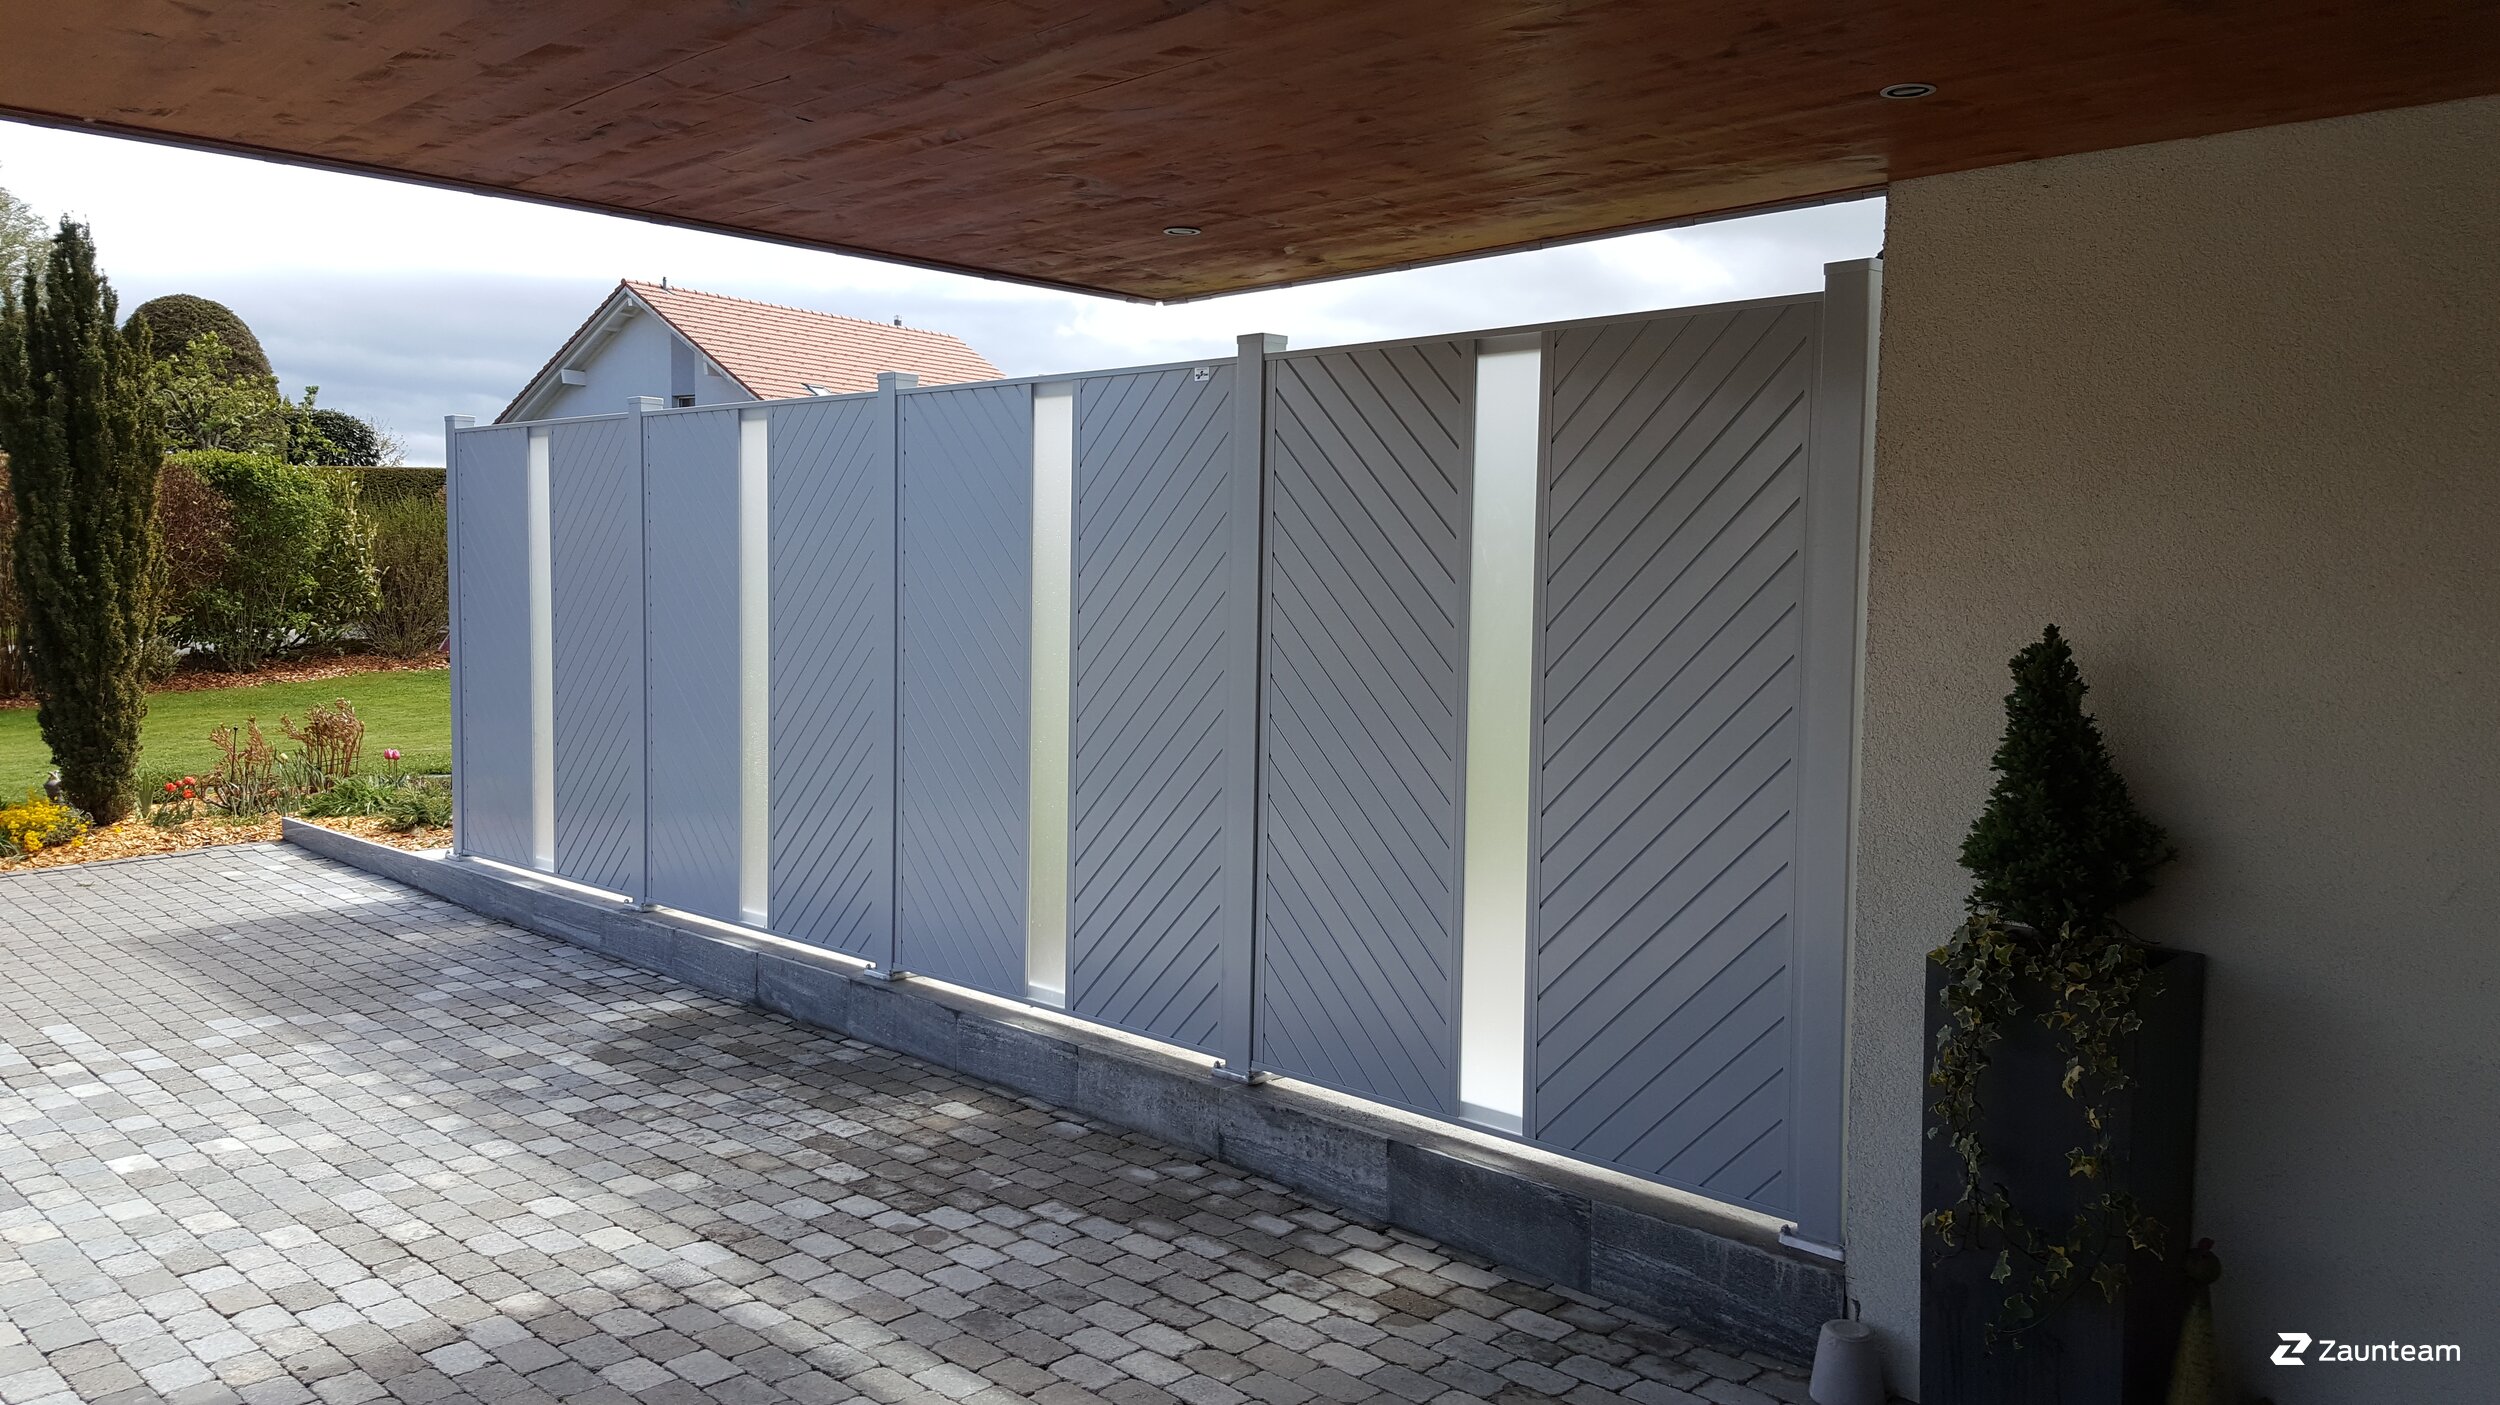 Protection brise-vue en aluminium de 2019 à 1080 Les Cullayes Suisse de Swissclôture Léman.